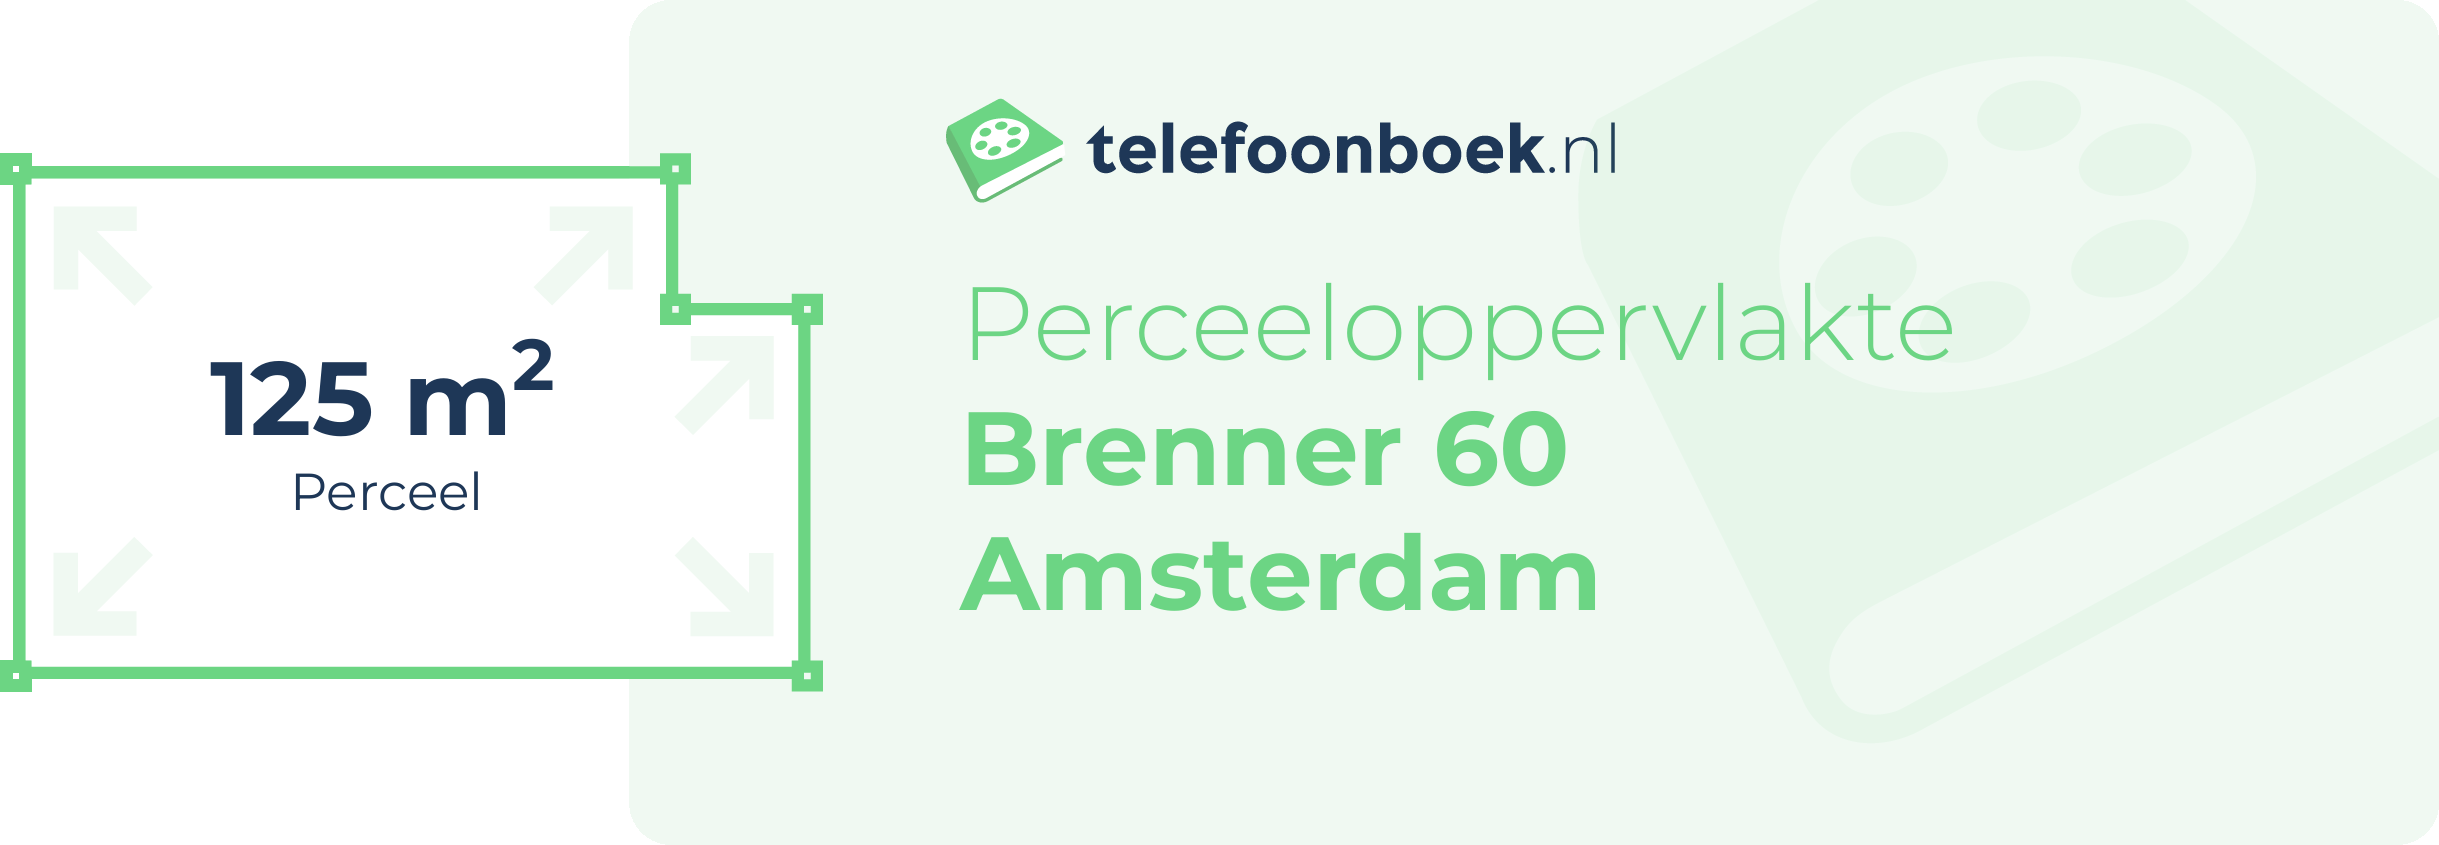 Perceeloppervlakte Brenner 60 Amsterdam